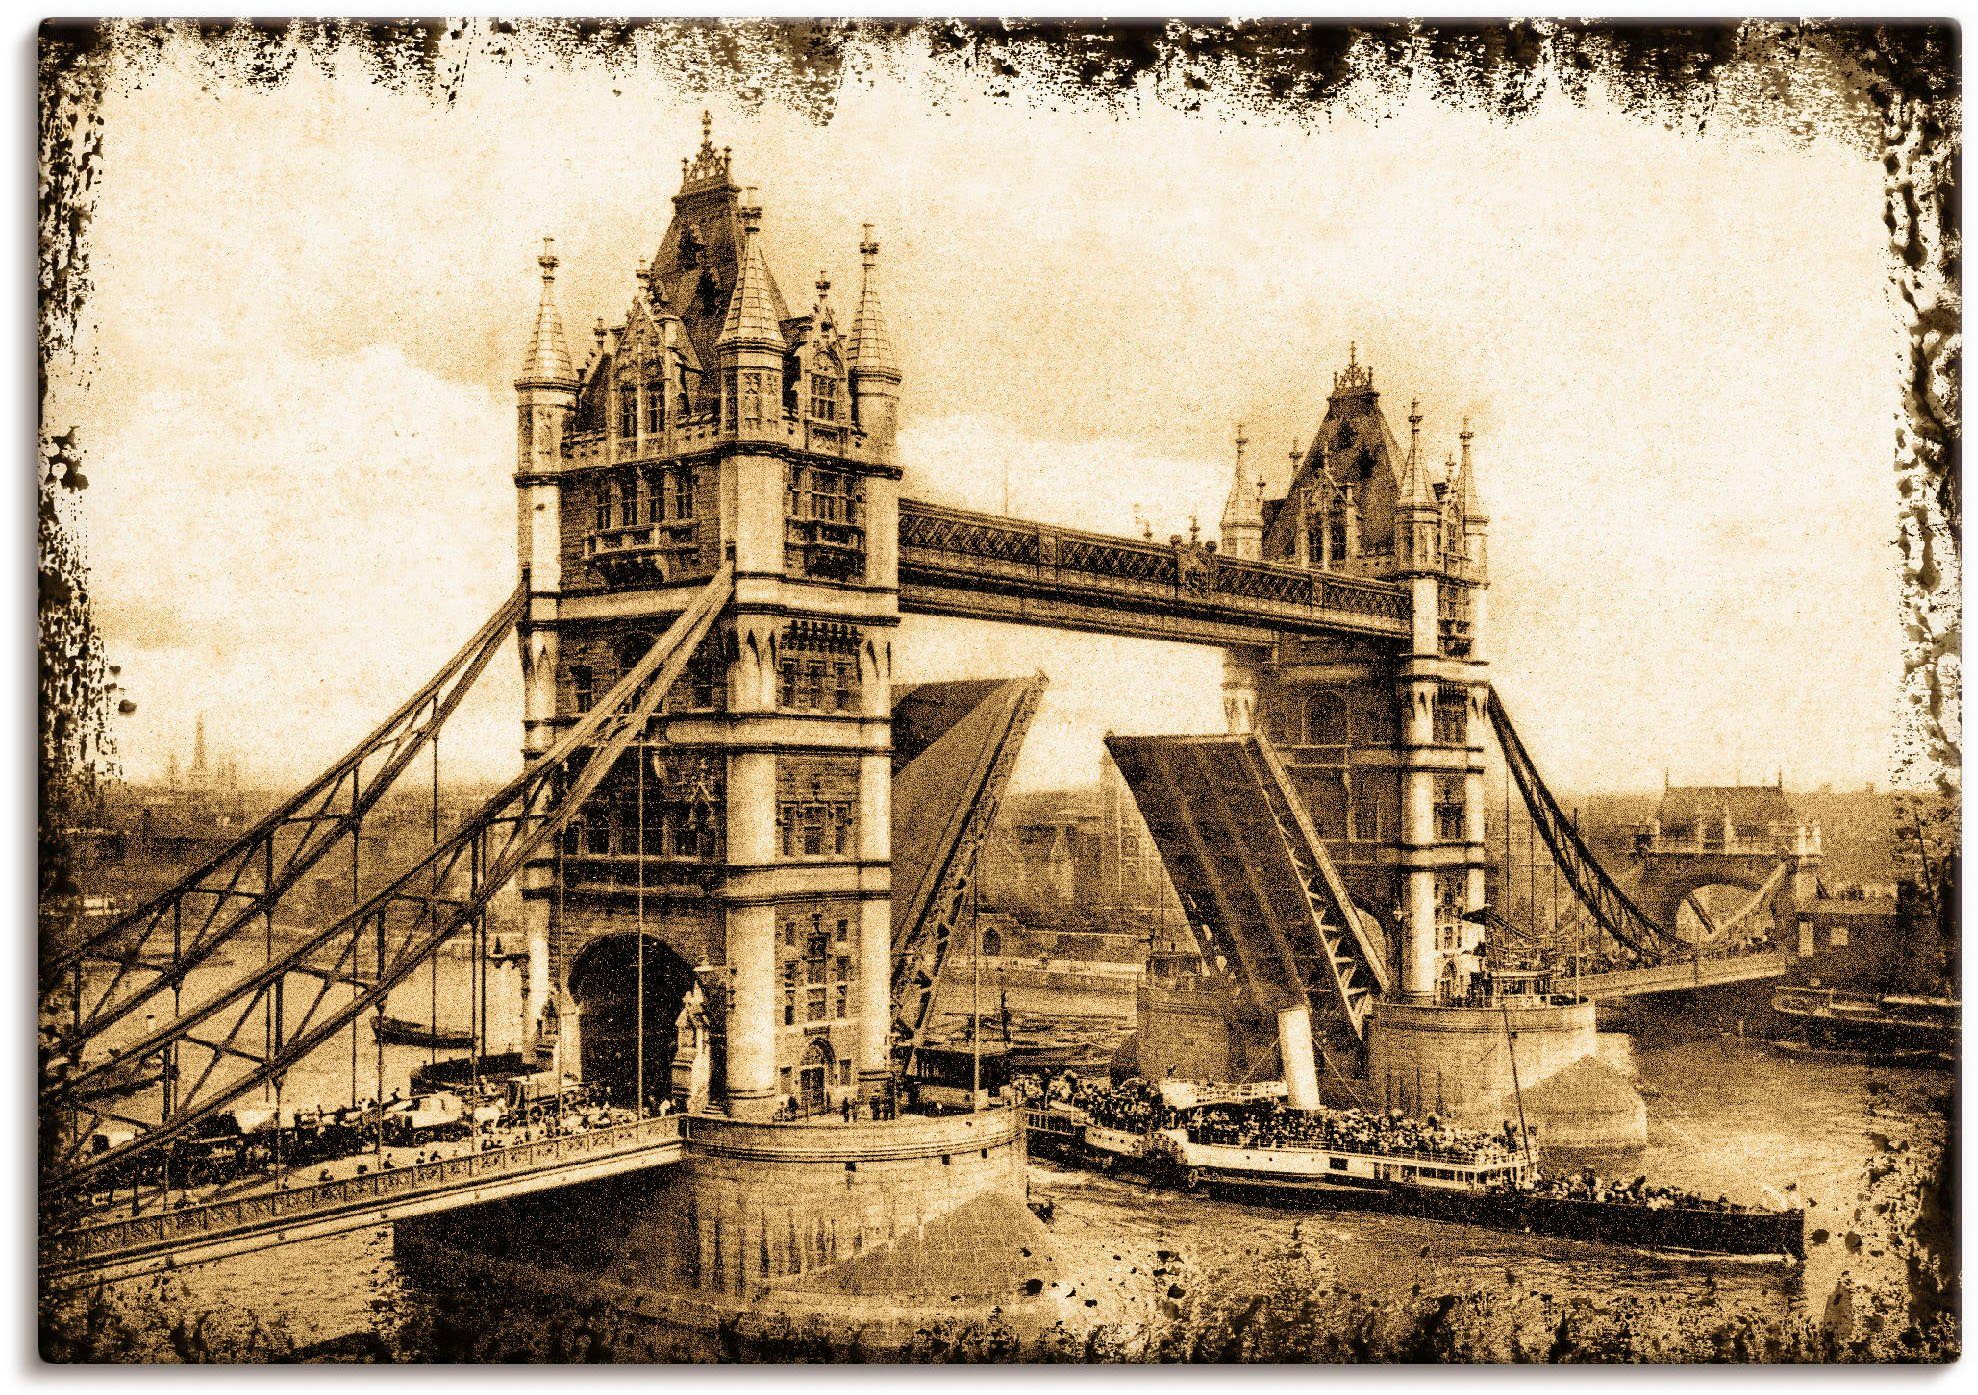 Artland Artprint Tower Bridge - Londen in vele afmetingen & productsoorten -artprint op linnen, poster, muursticker / wandfolie ook geschikt voor de badkamer (1 stuk)